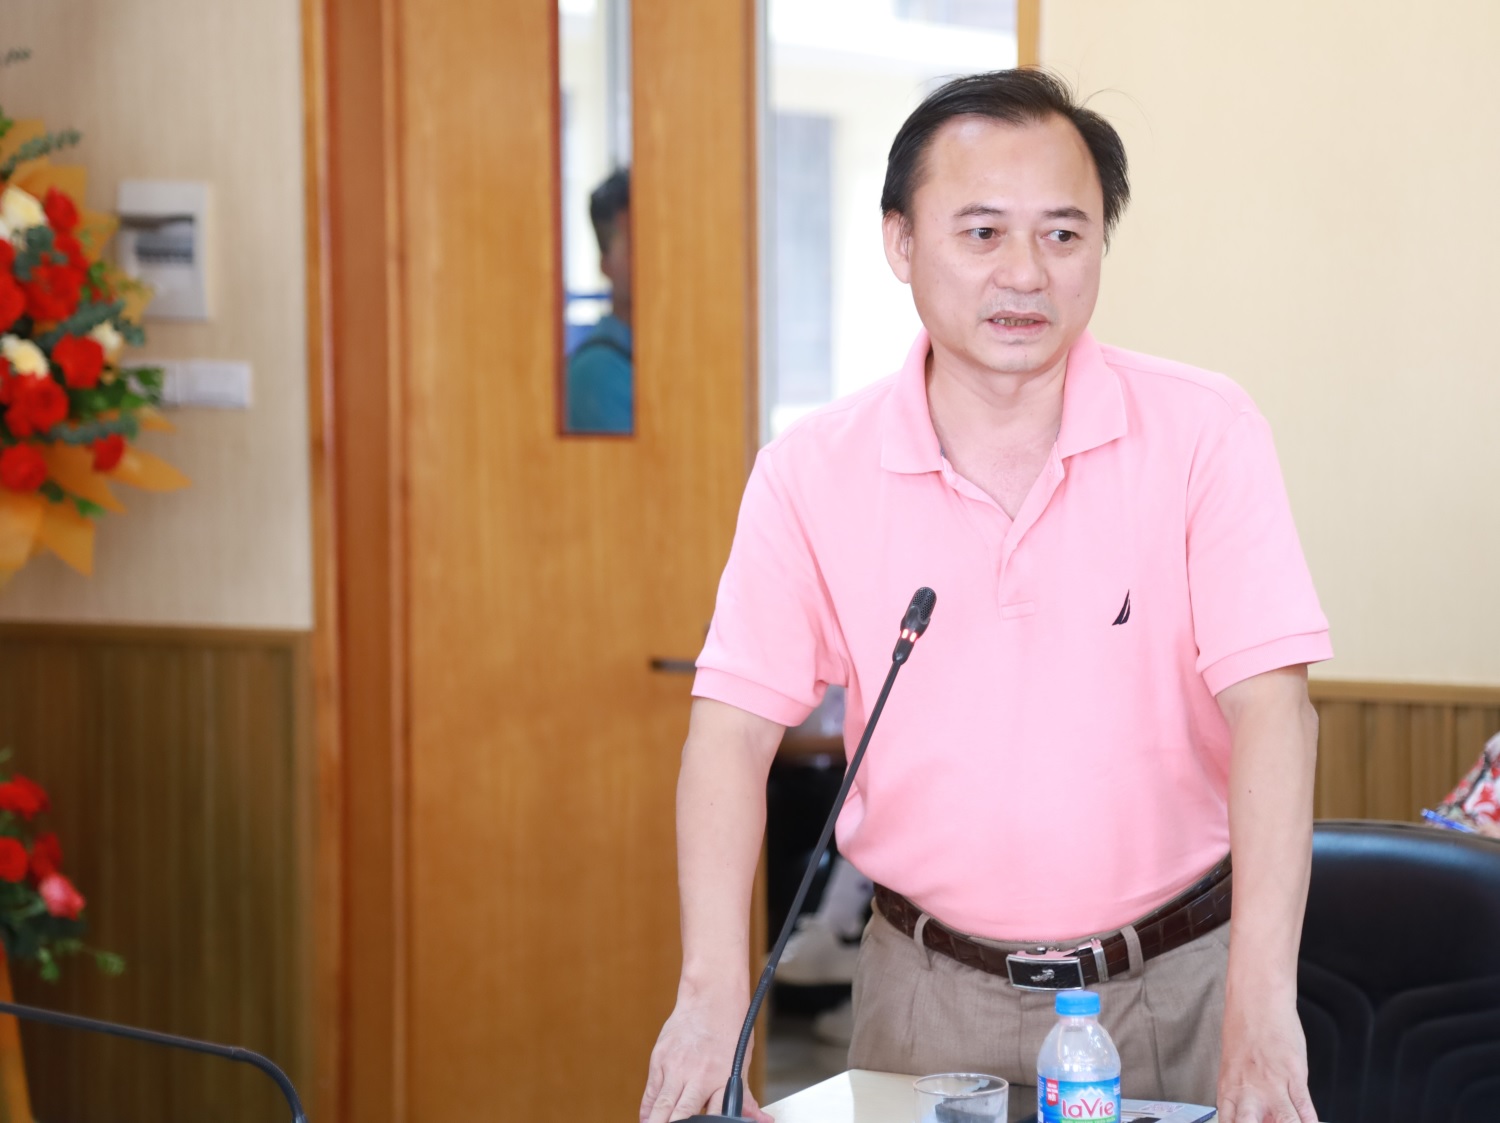 TS. Tạ Quang Tuấn, Phó Tổng biên tập Tạp chí Quản lý nhà nước chia sẻ mối liên kết chặt chẽ giữa Tạp chí và Thư viện Học viện Hành chính Quốc gia.